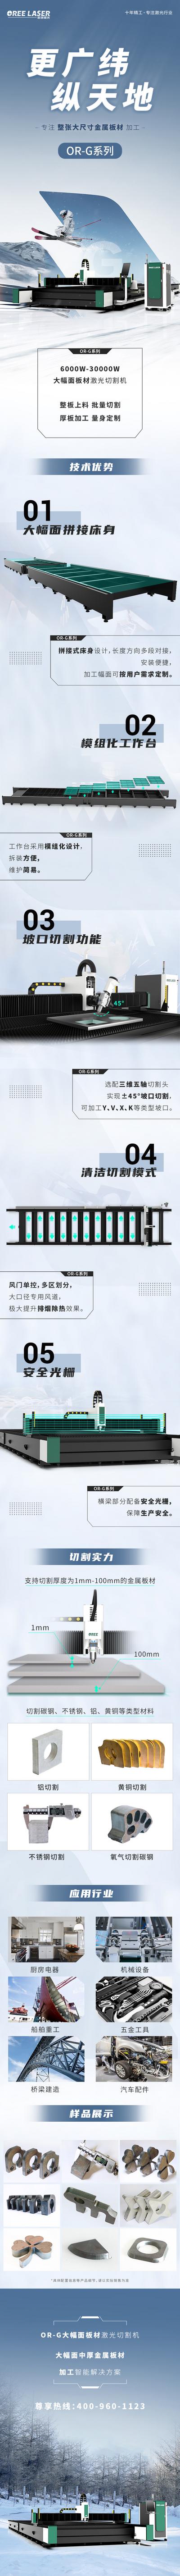 【南门网】广告 海报 长图 专题 机构 机械 车床